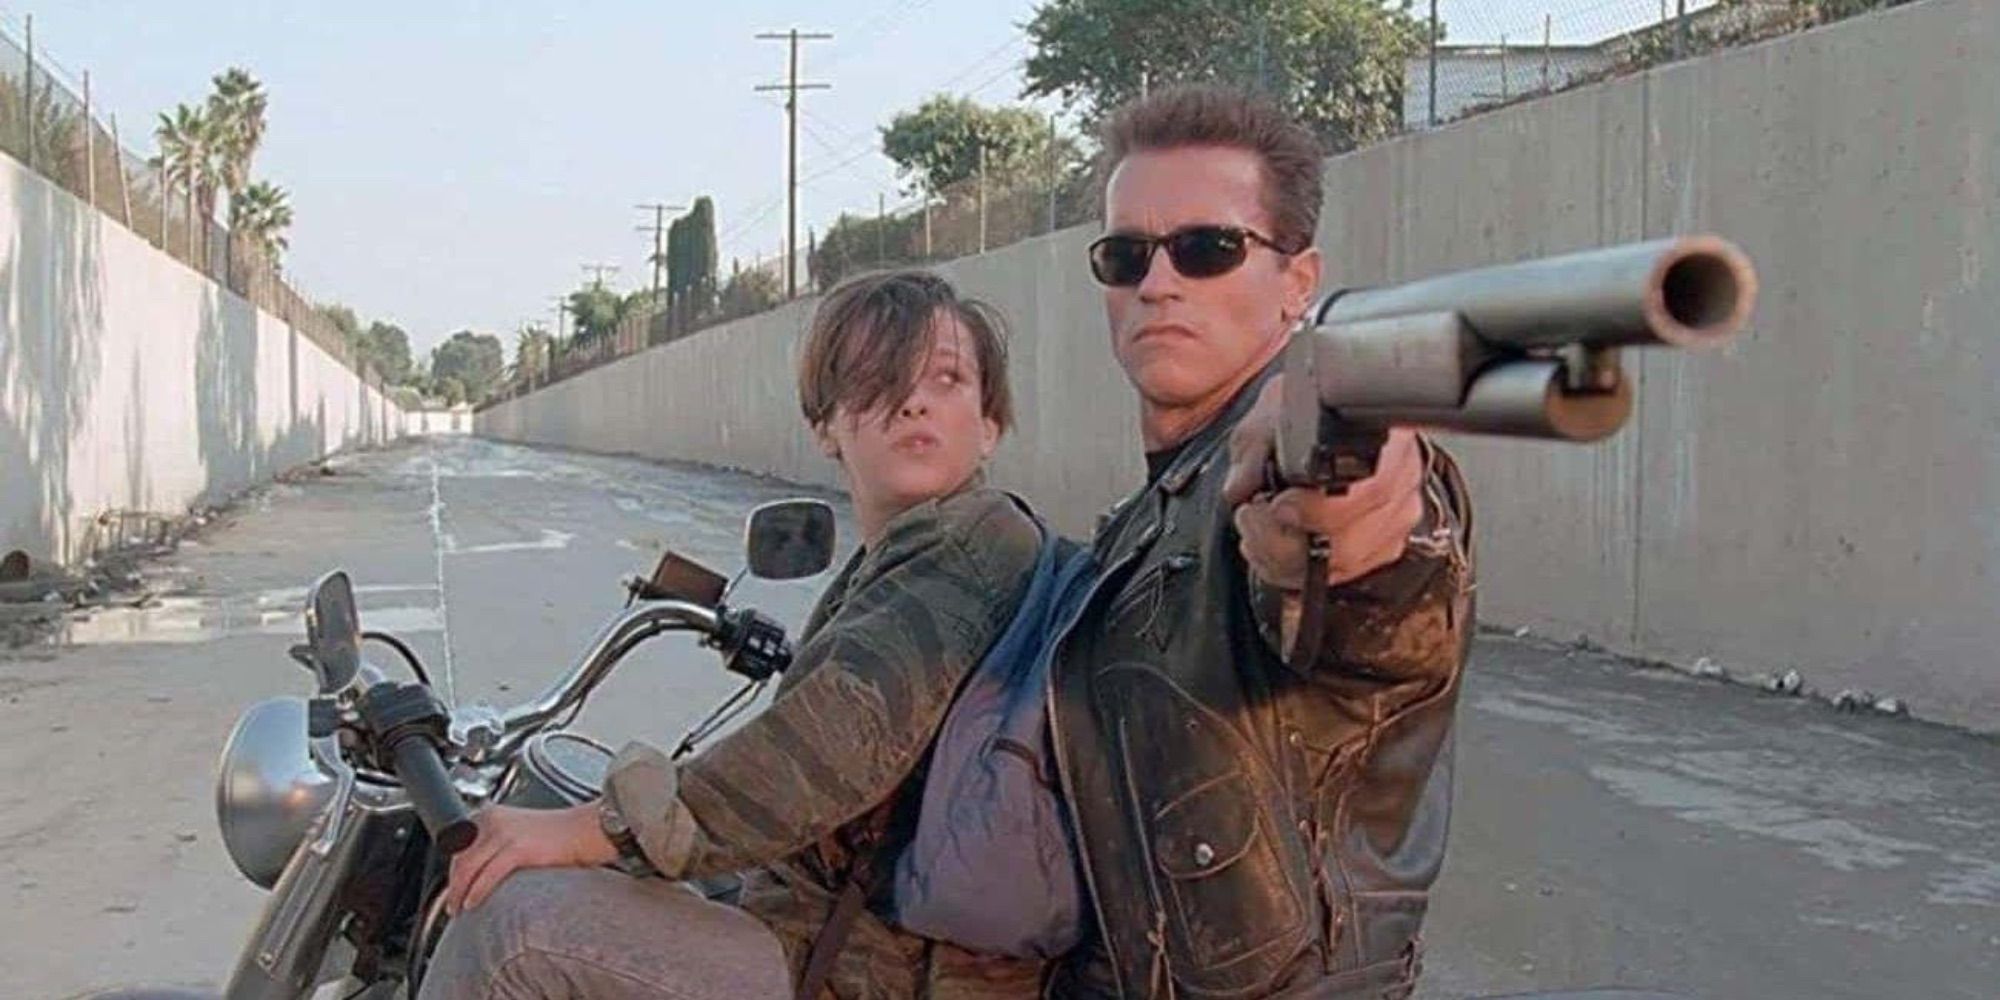 Edward Furlong as John Connor on a motorcycle with Arnold Schwarzenegger as the Terminator aims a shotgun